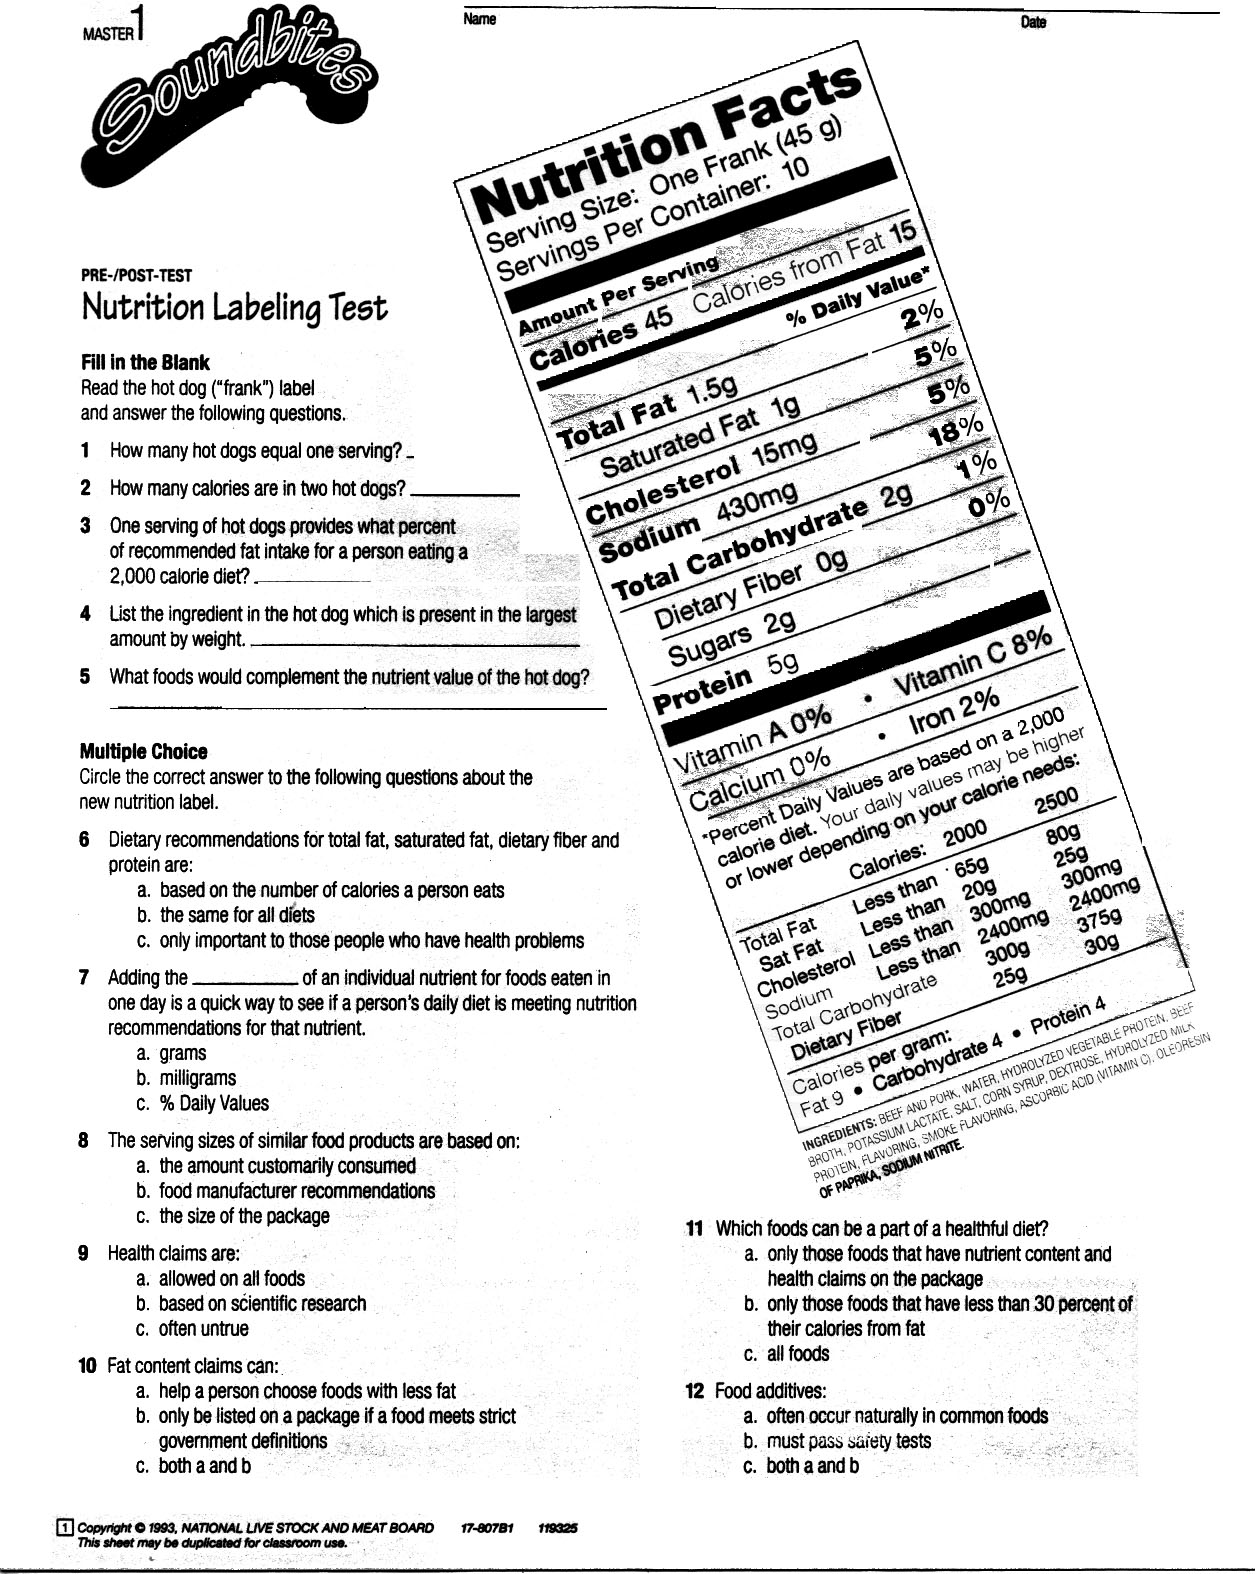 Nutrition Label Worksheet Image